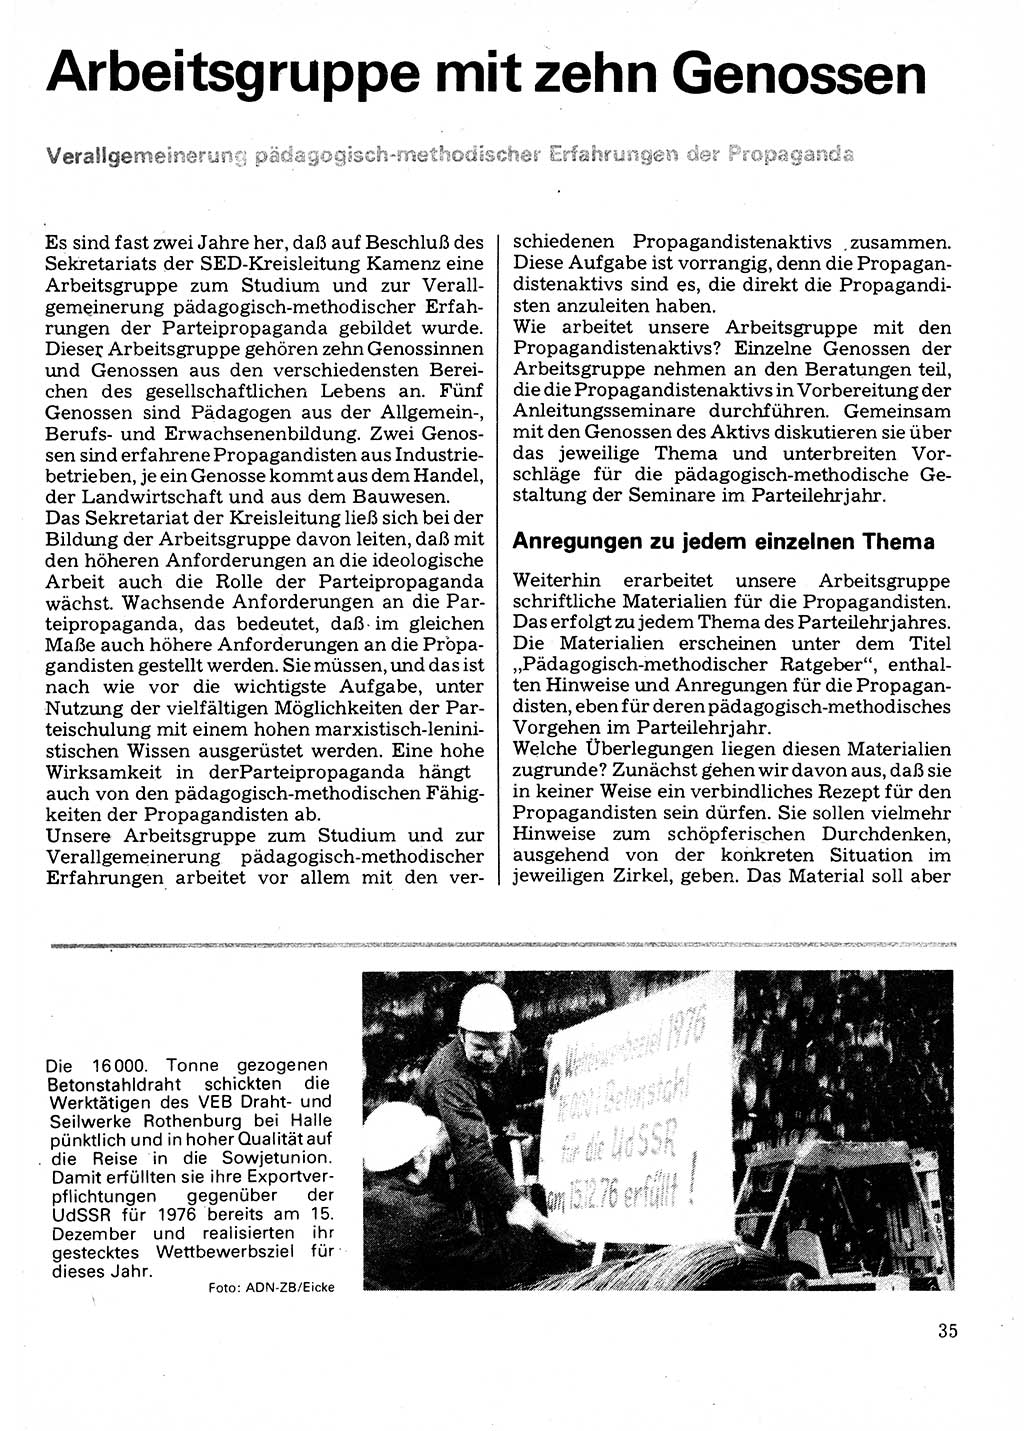 Neuer Weg (NW), Organ des Zentralkomitees (ZK) der SED (Sozialistische Einheitspartei Deutschlands) für Fragen des Parteilebens, 32. Jahrgang [Deutsche Demokratische Republik (DDR)] 1977, Seite 35 (NW ZK SED DDR 1977, S. 35)